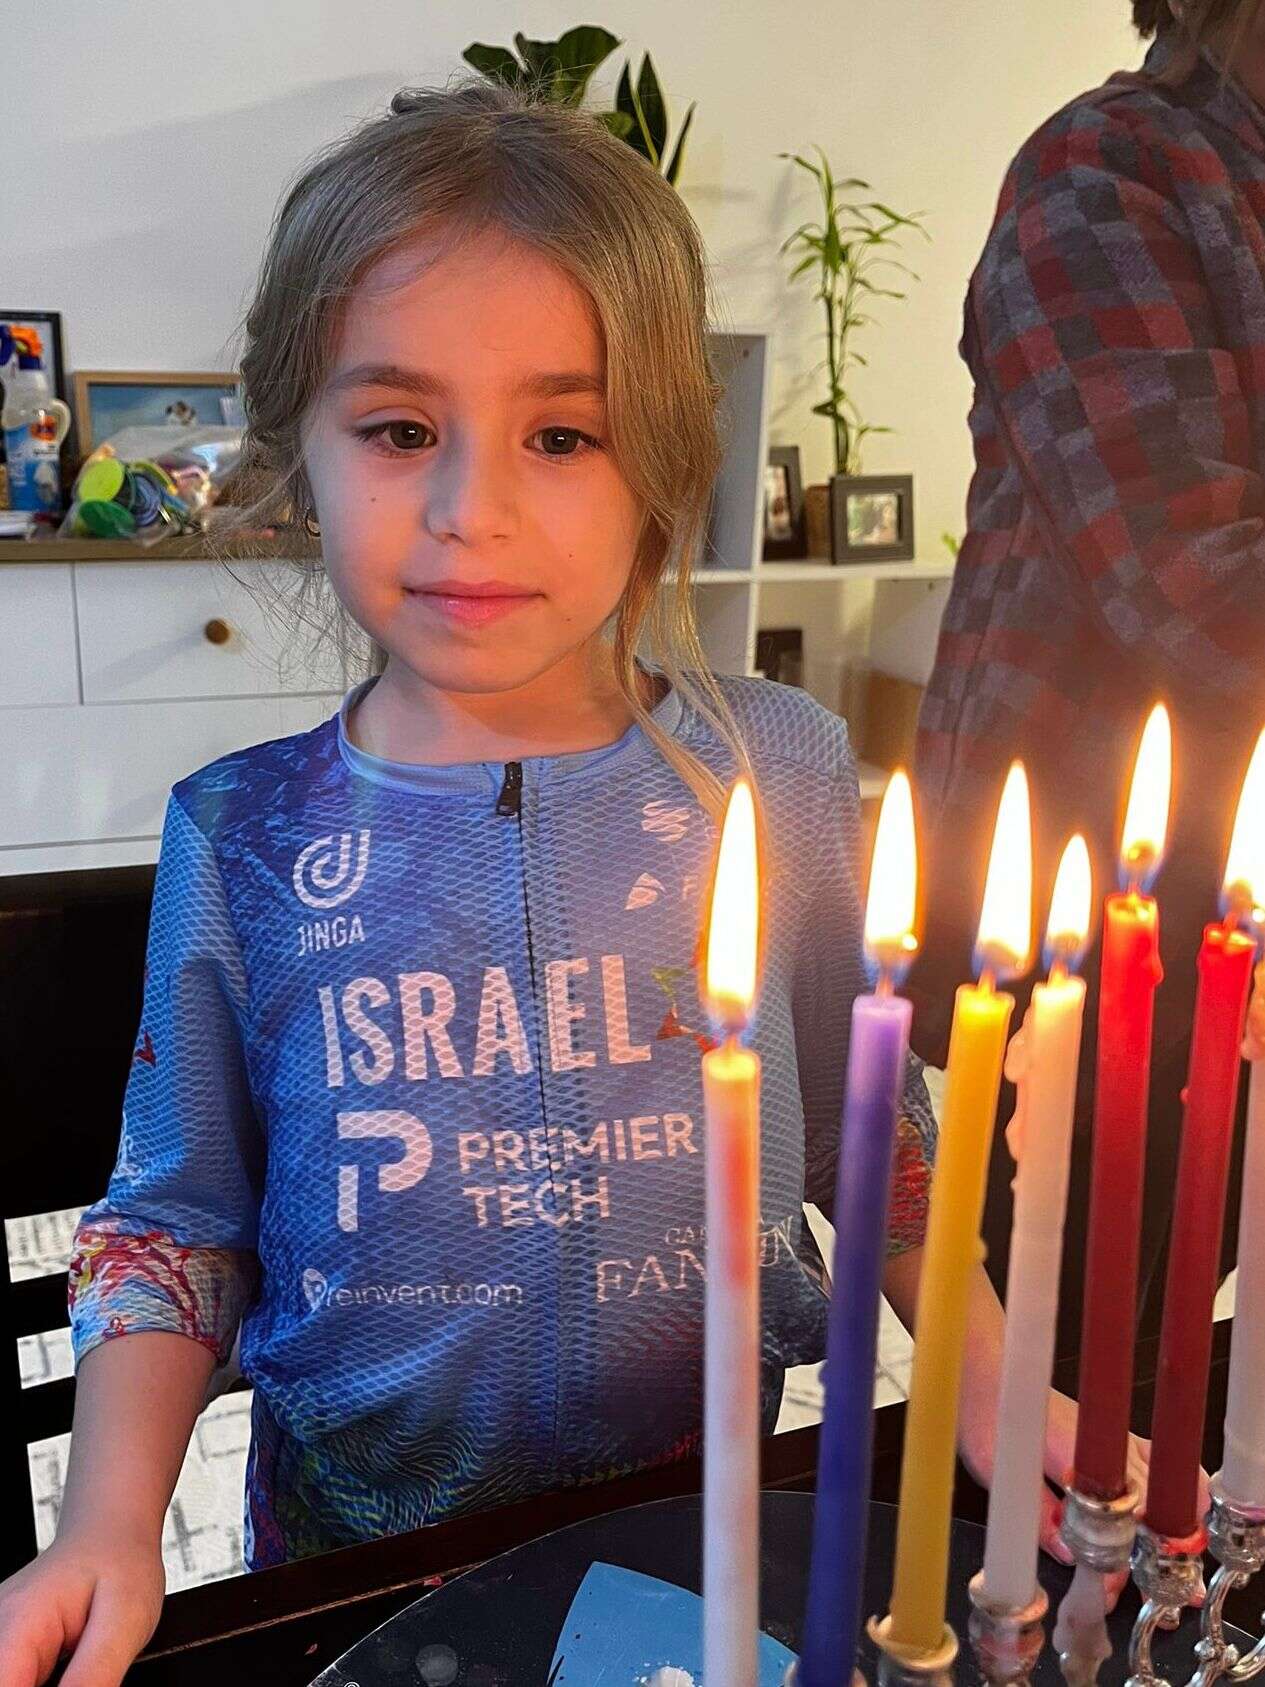 ביתו של תומר עם חולצת ישראל פרמייר טק , באדיבות משפחת שפירר